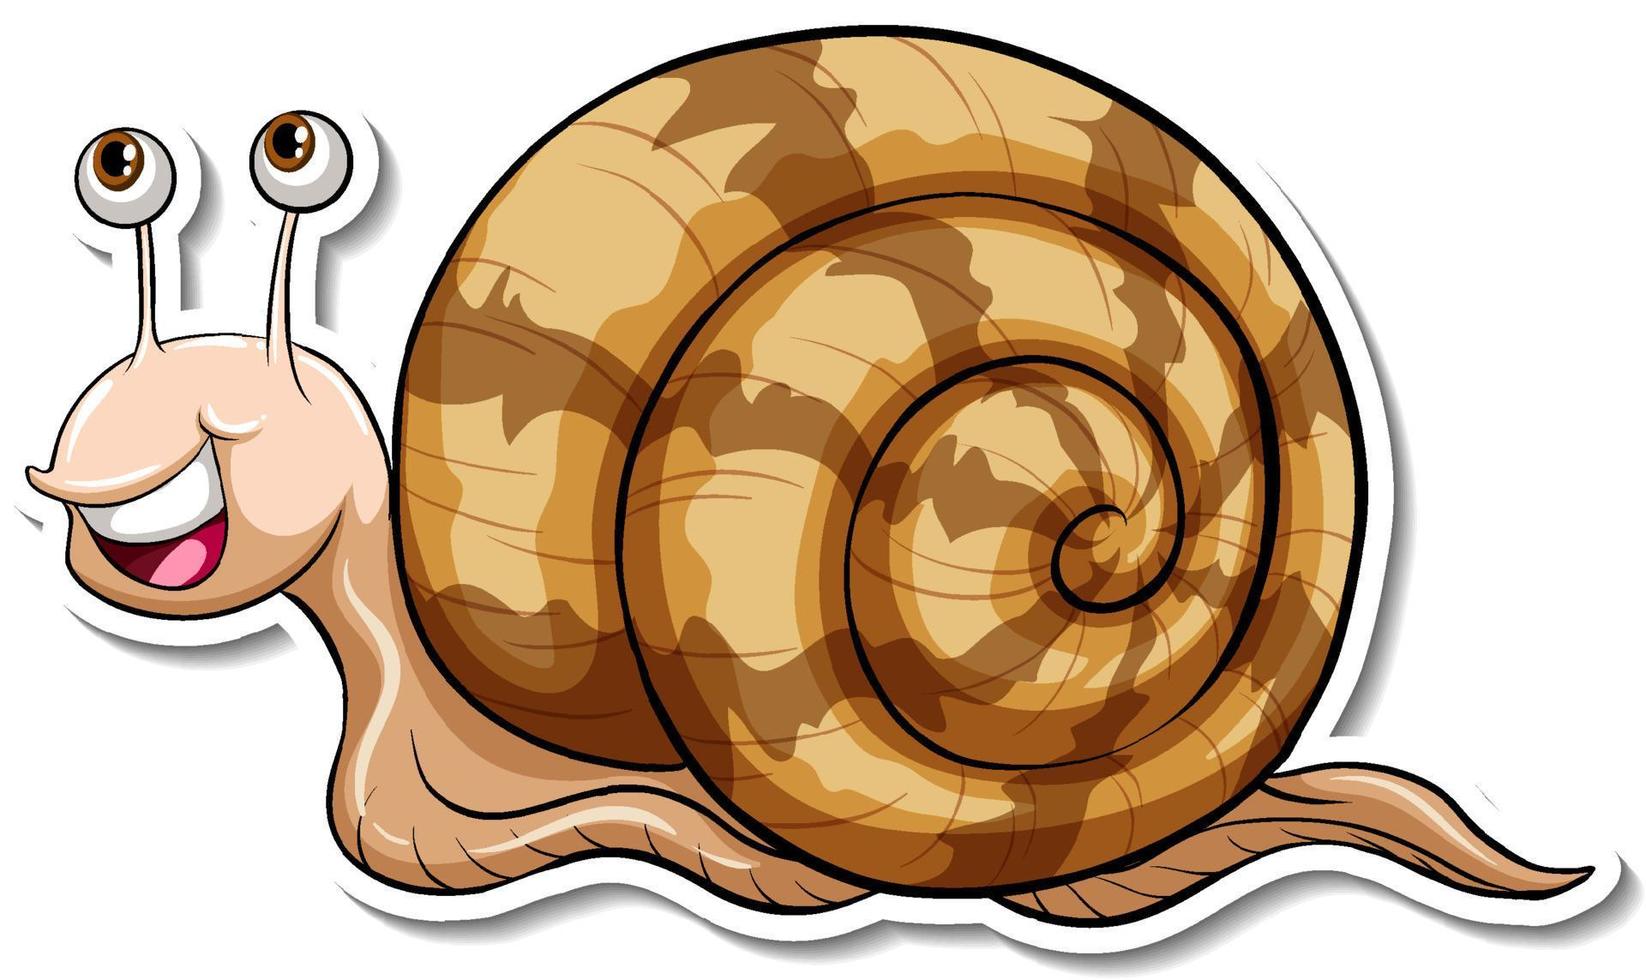 Snail animal cartoon sticker vector